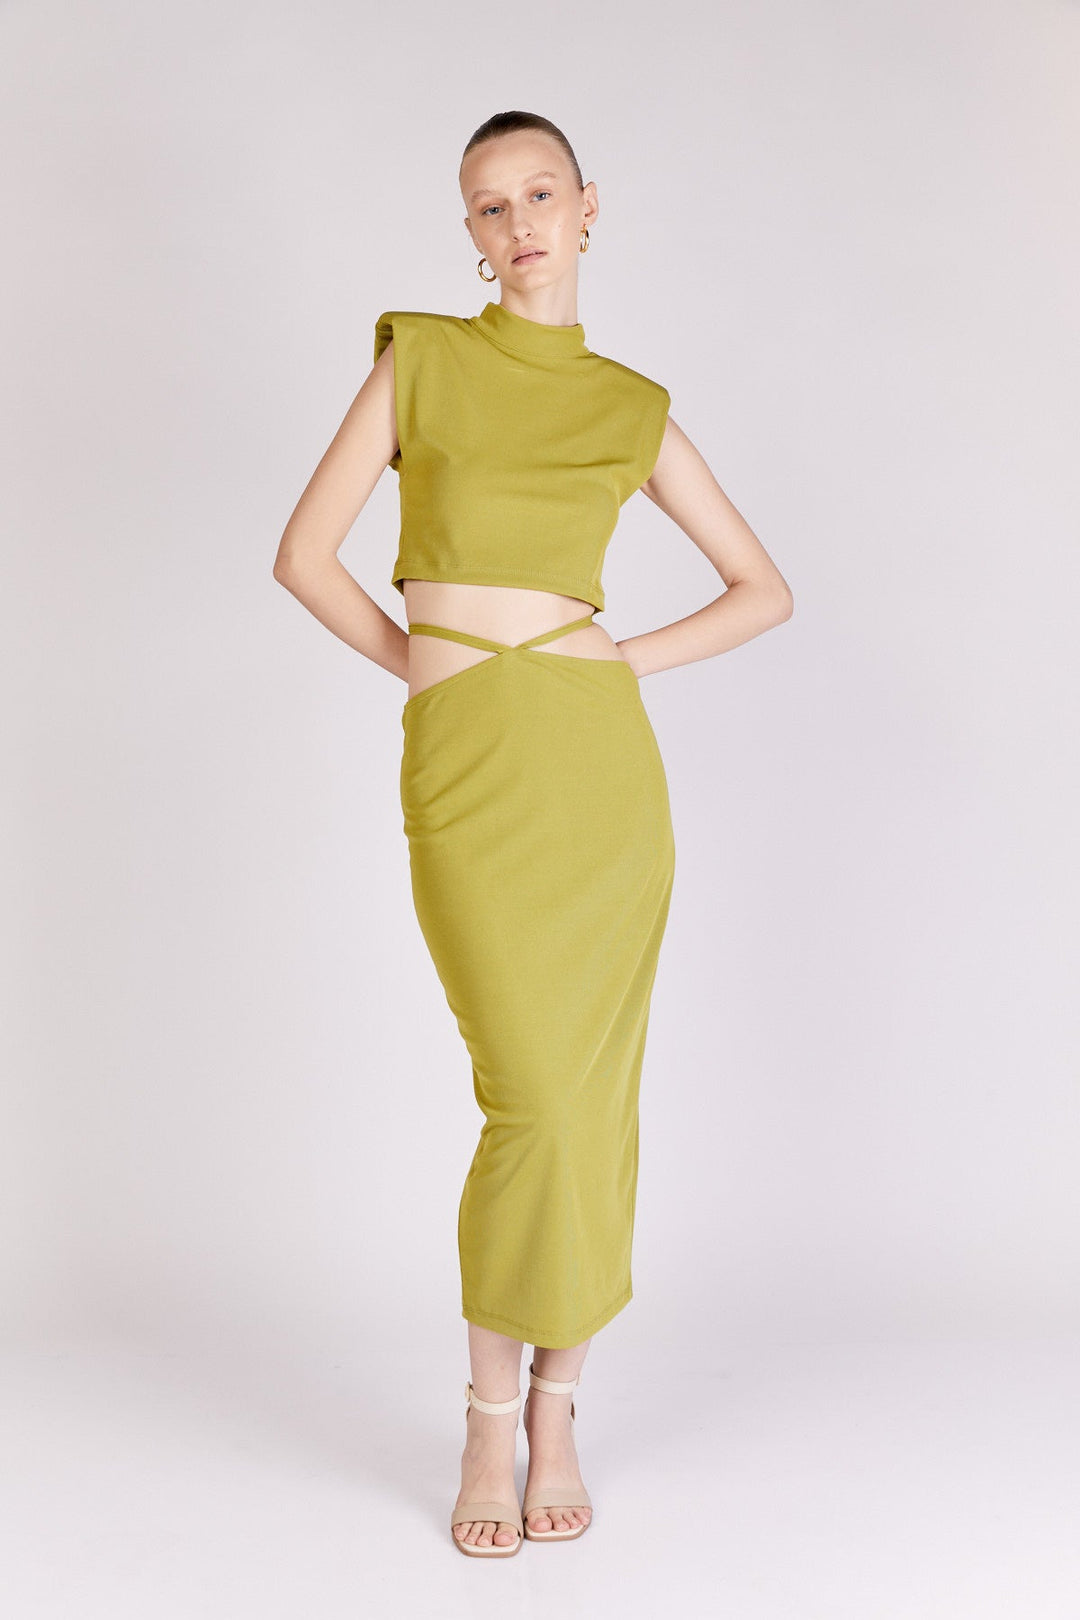 חצאית לוטי בצבע זית - Dana Sidi